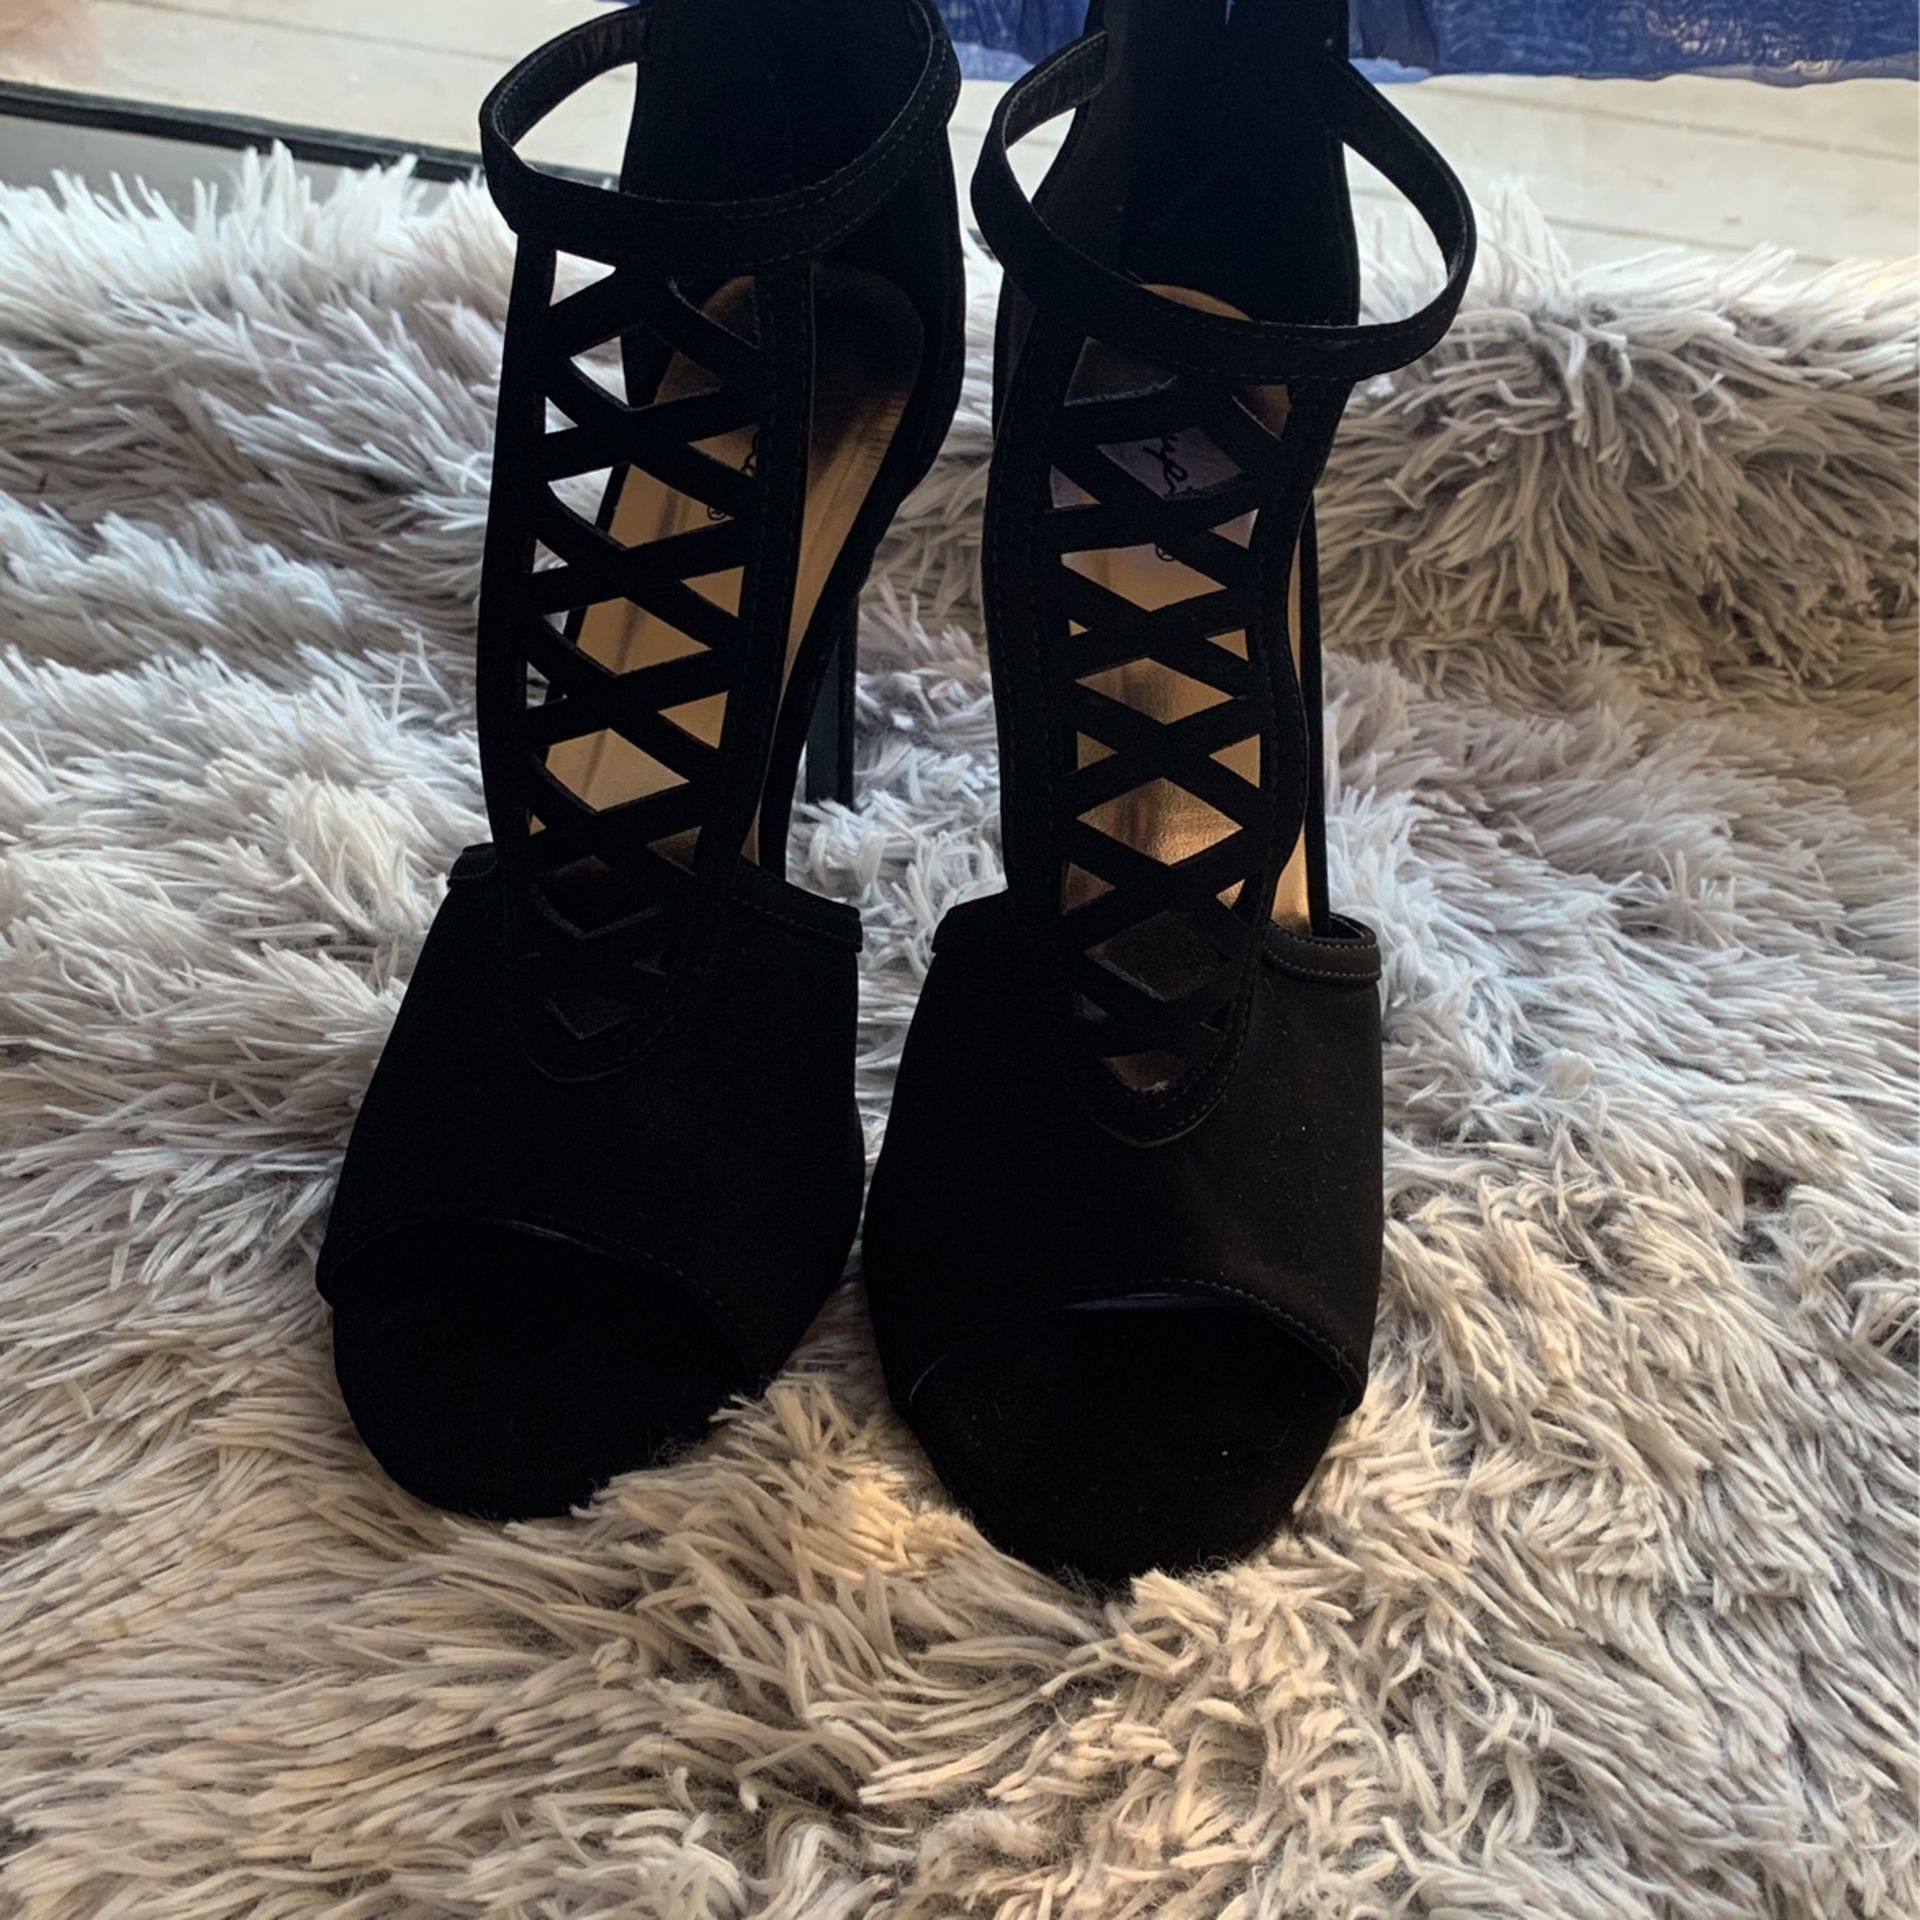 Size 10 black zip up heels. Brand Qupid